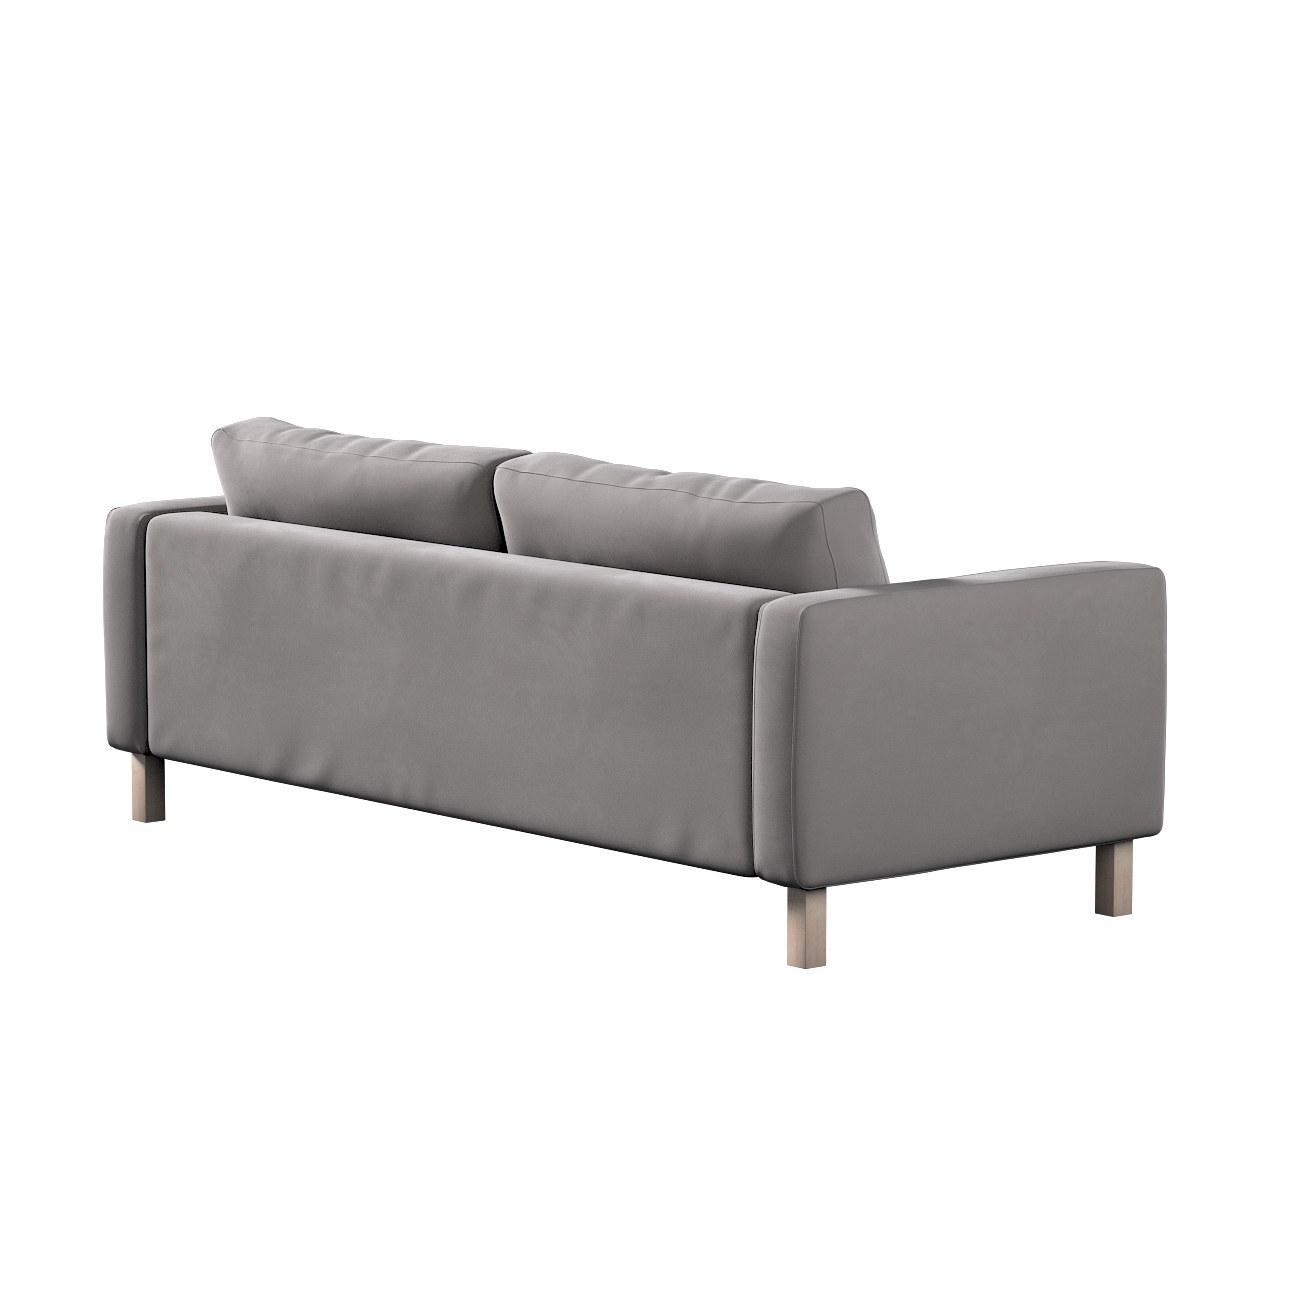 Bezug für Karlstad 3-Sitzer Sofa nicht ausklappbar, kurz, taupengrau, Bezug günstig online kaufen